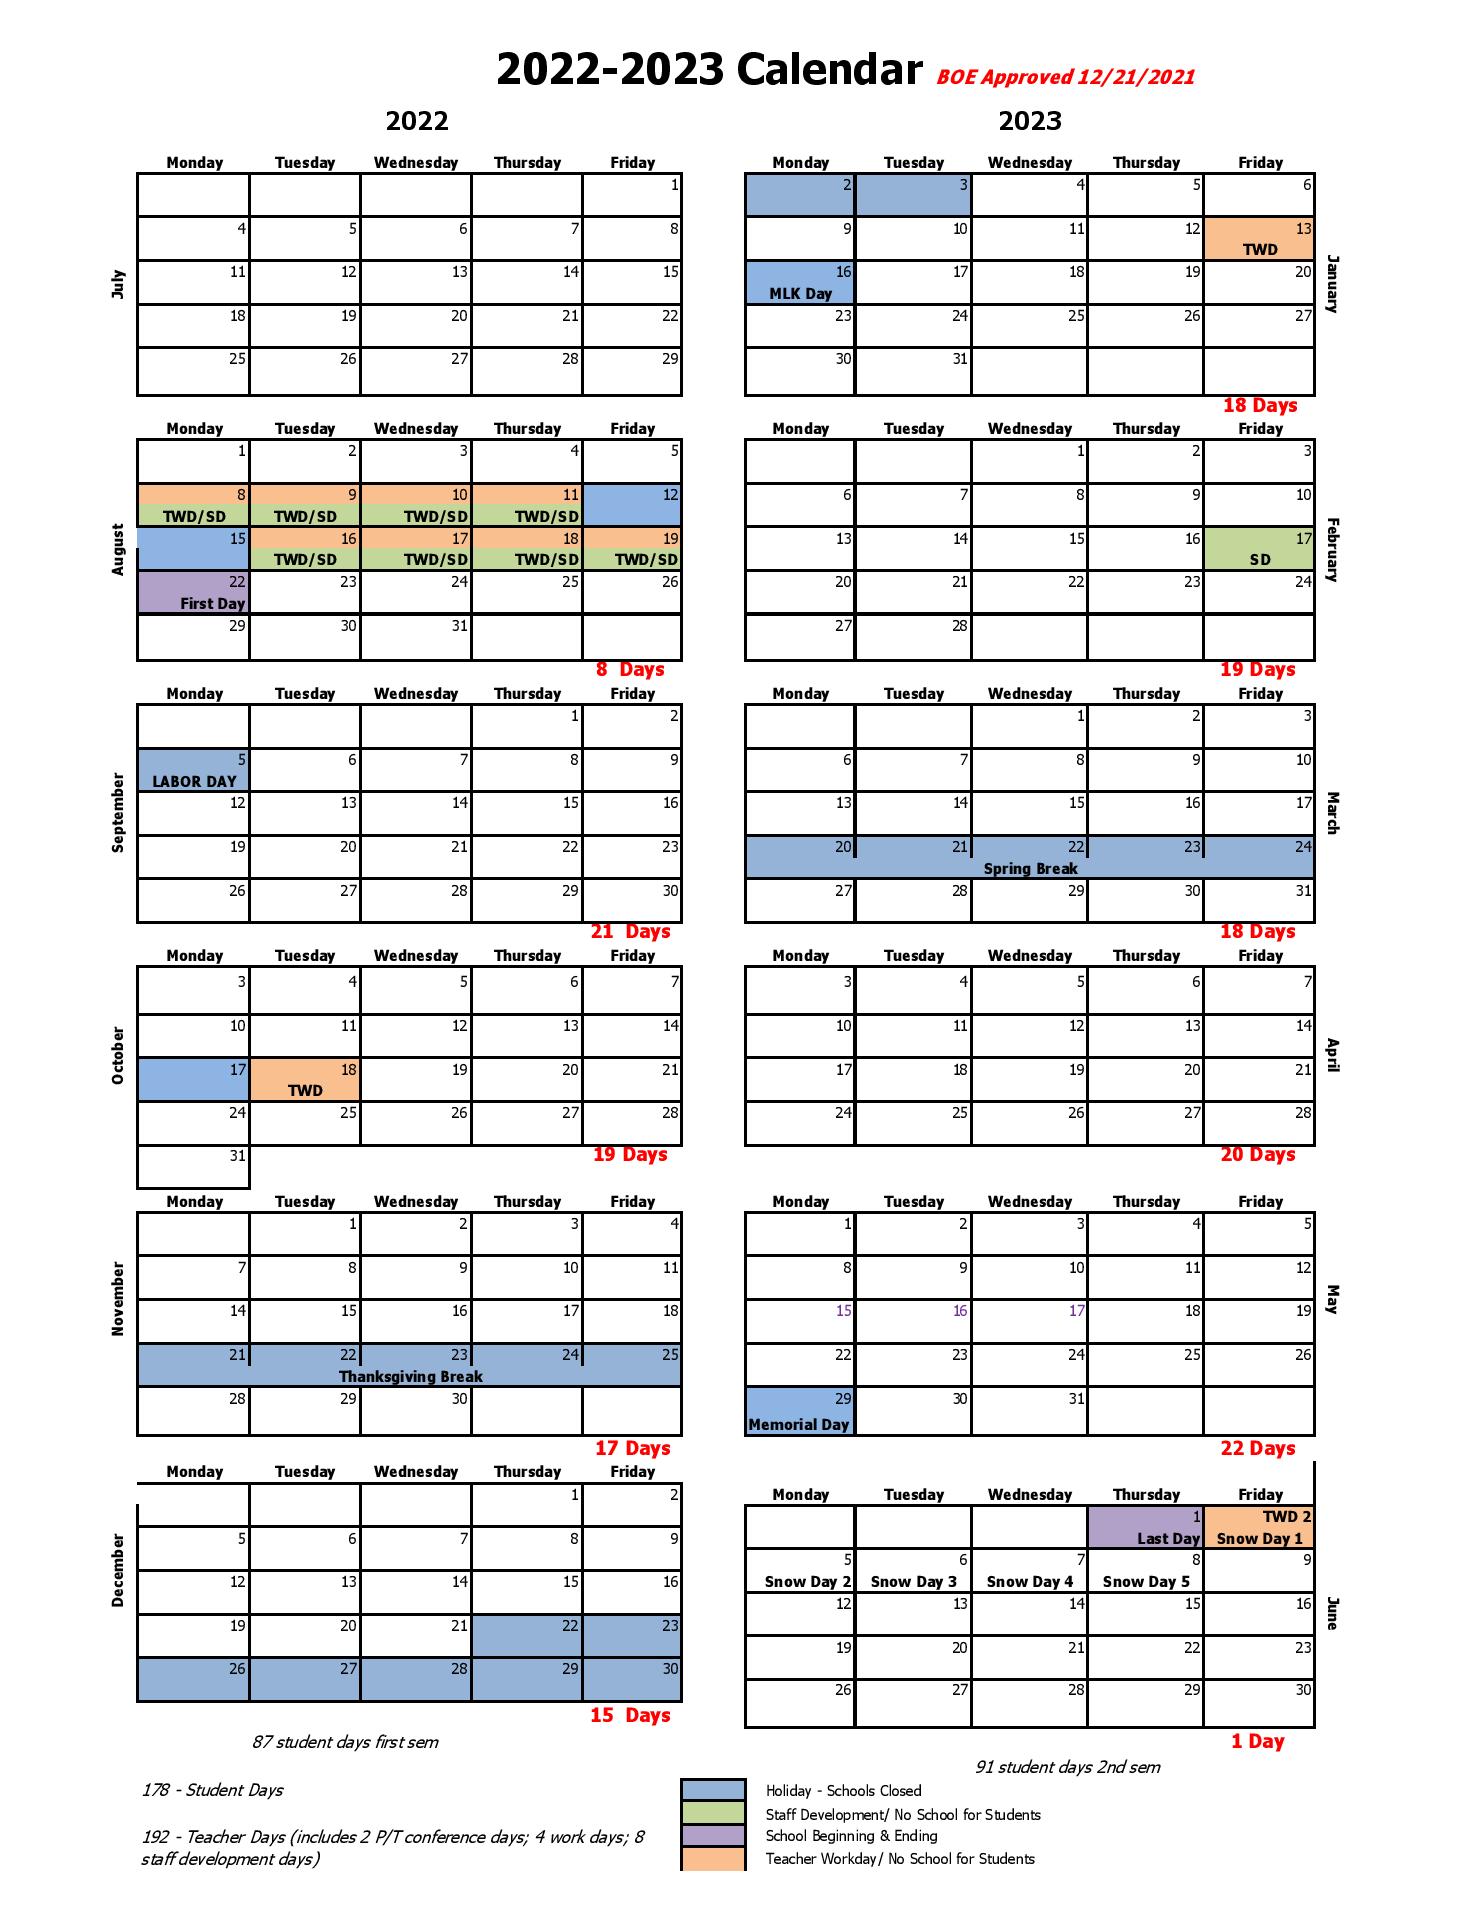 Bentonville Public Schools Calendar 20222023 in PDF Public Holidays